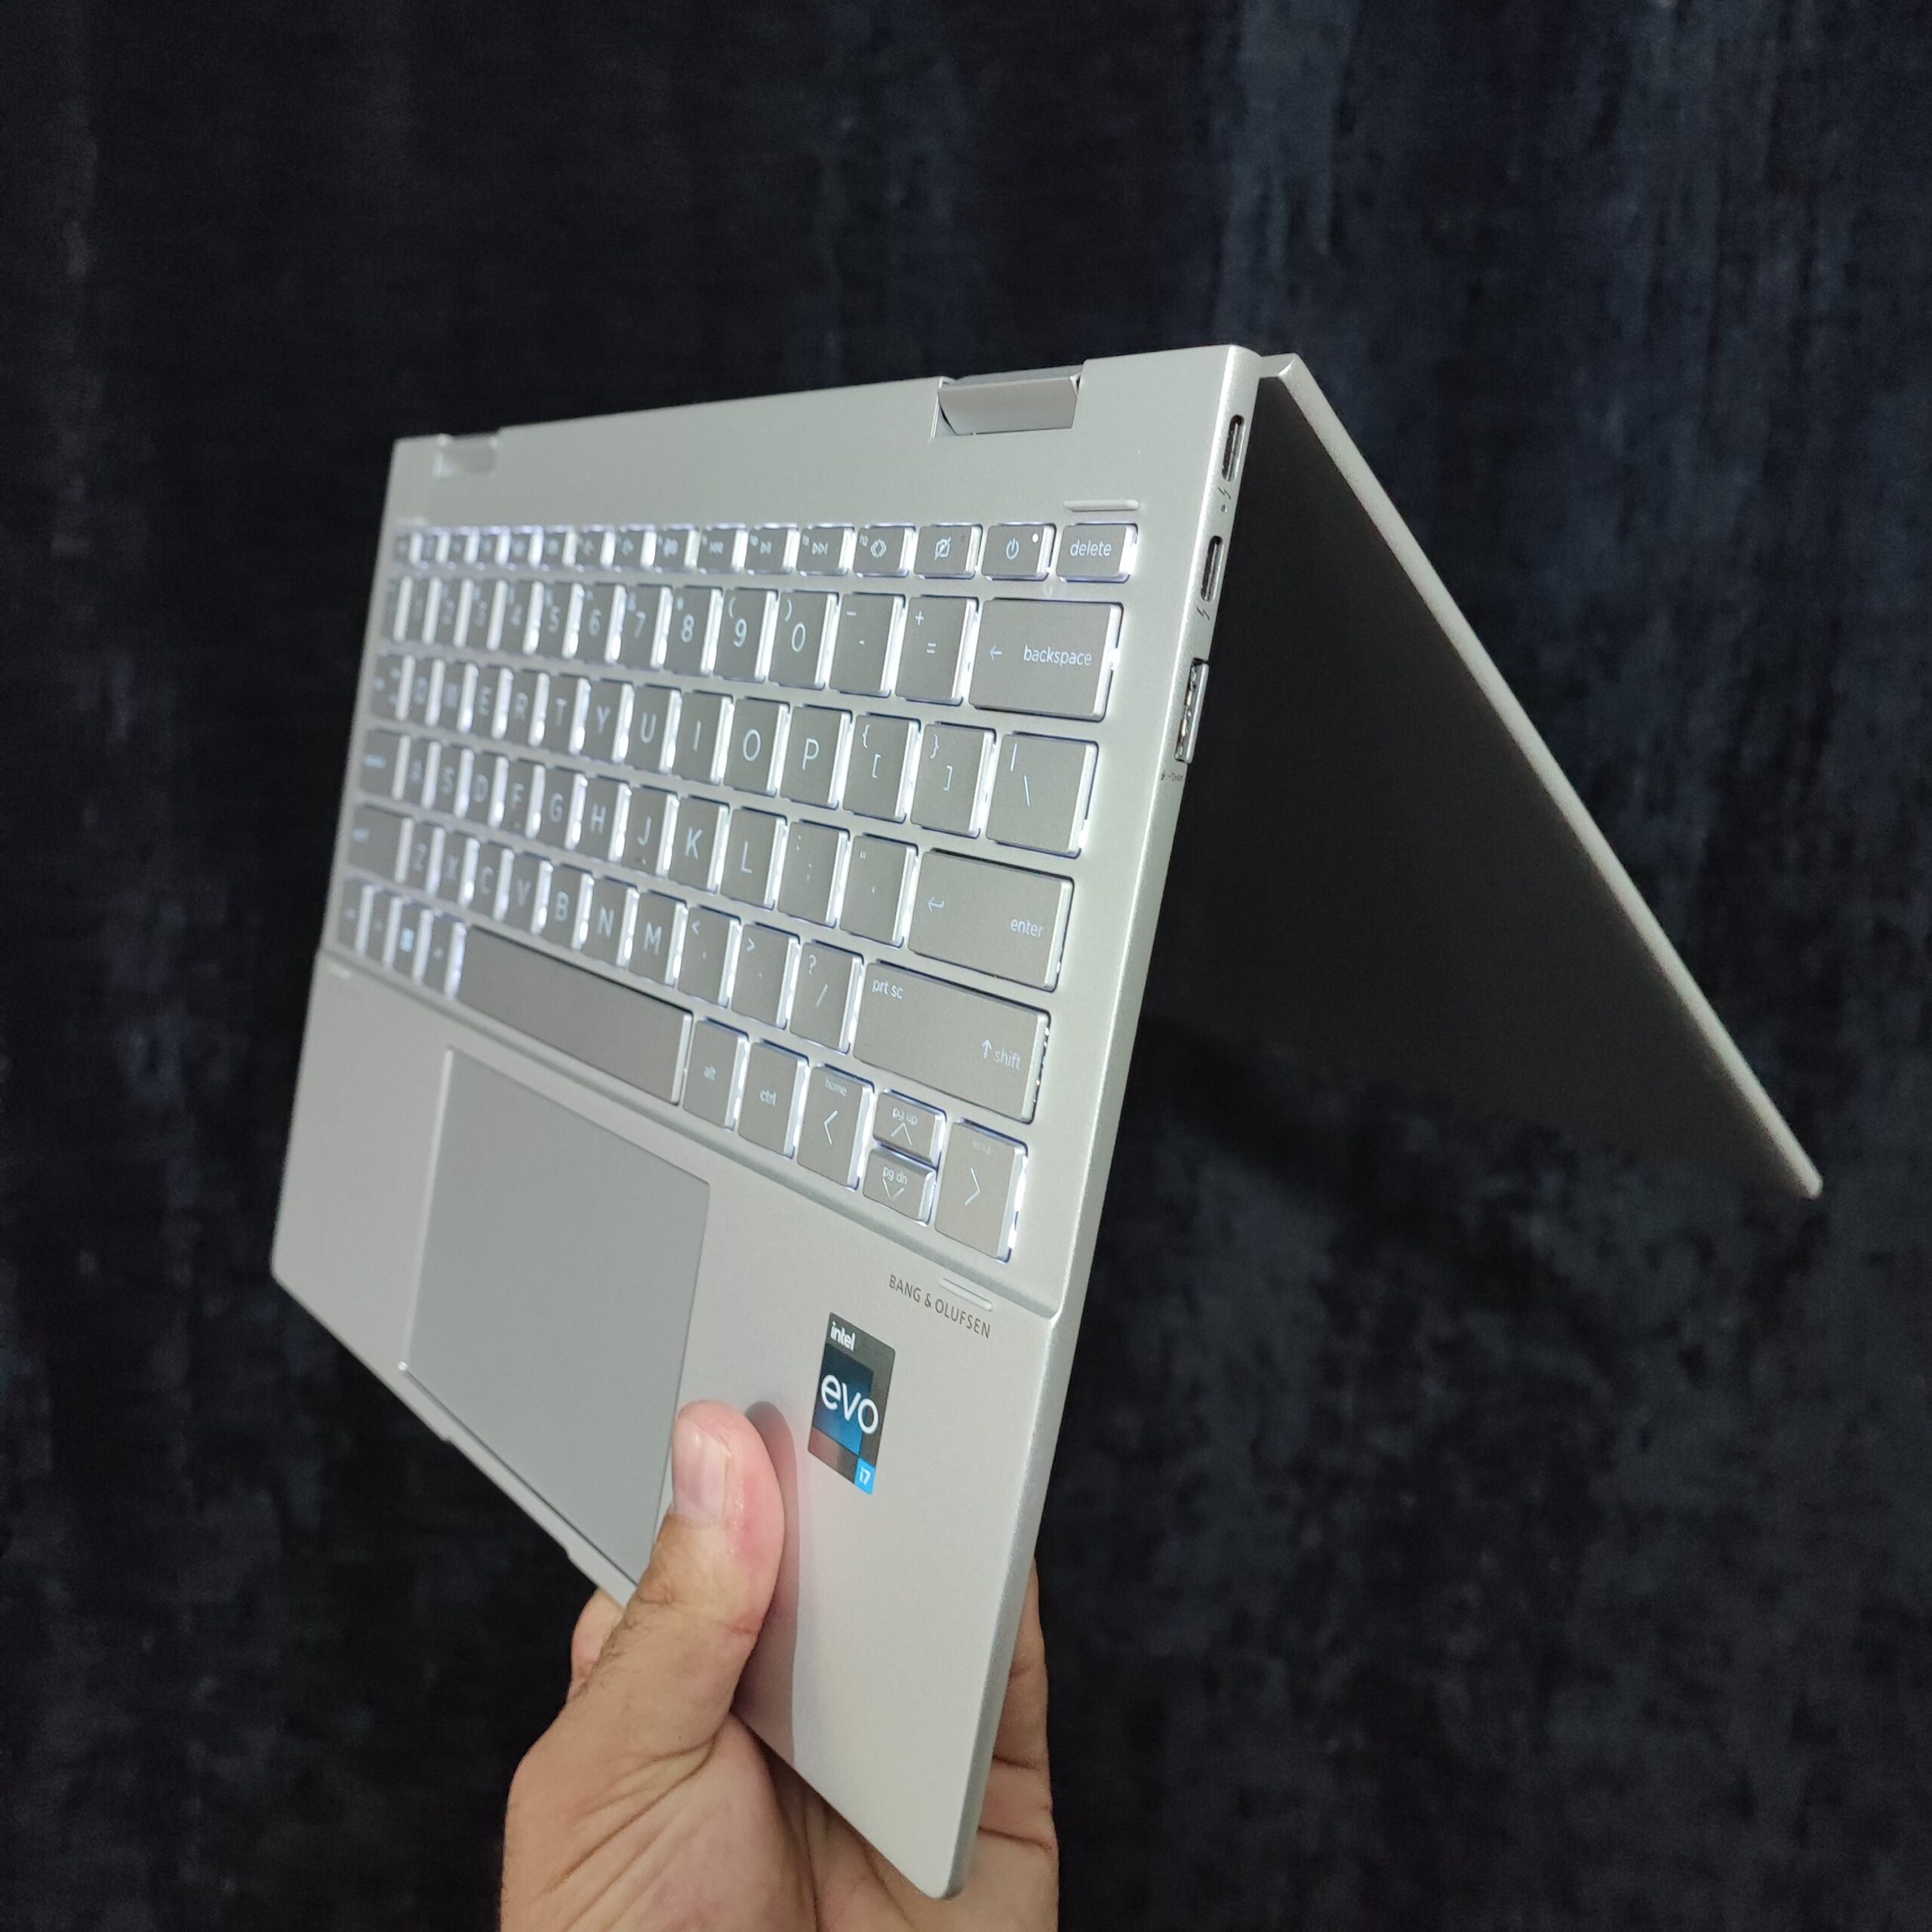 HP ENVY x360 2-in-1 Laptop 13